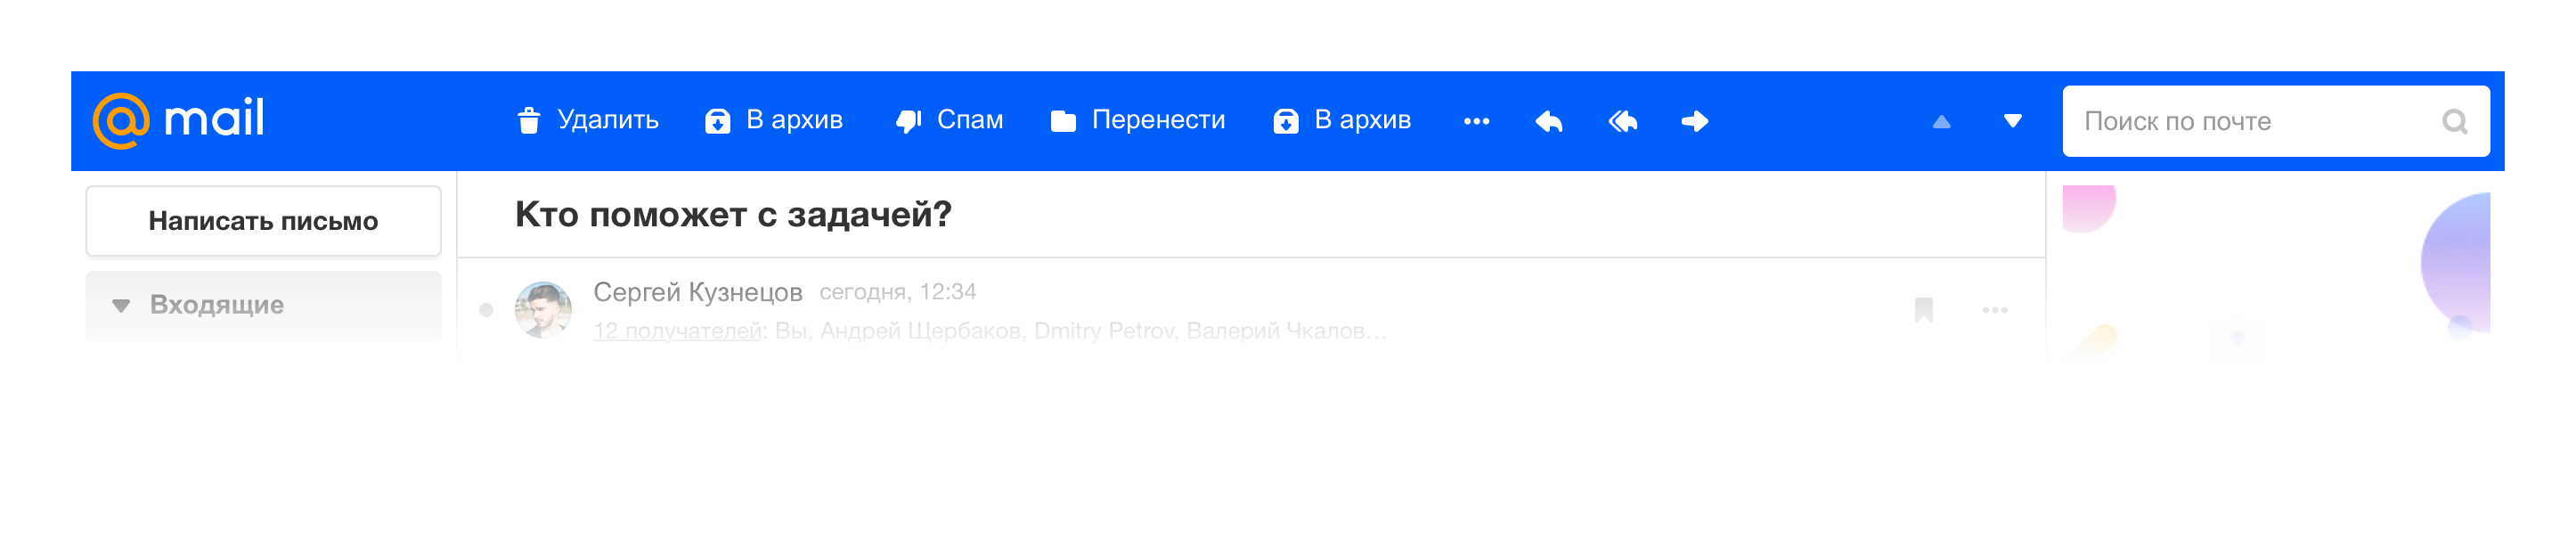 Новая Почта Mail.ru и при чем тут осьминог - 26